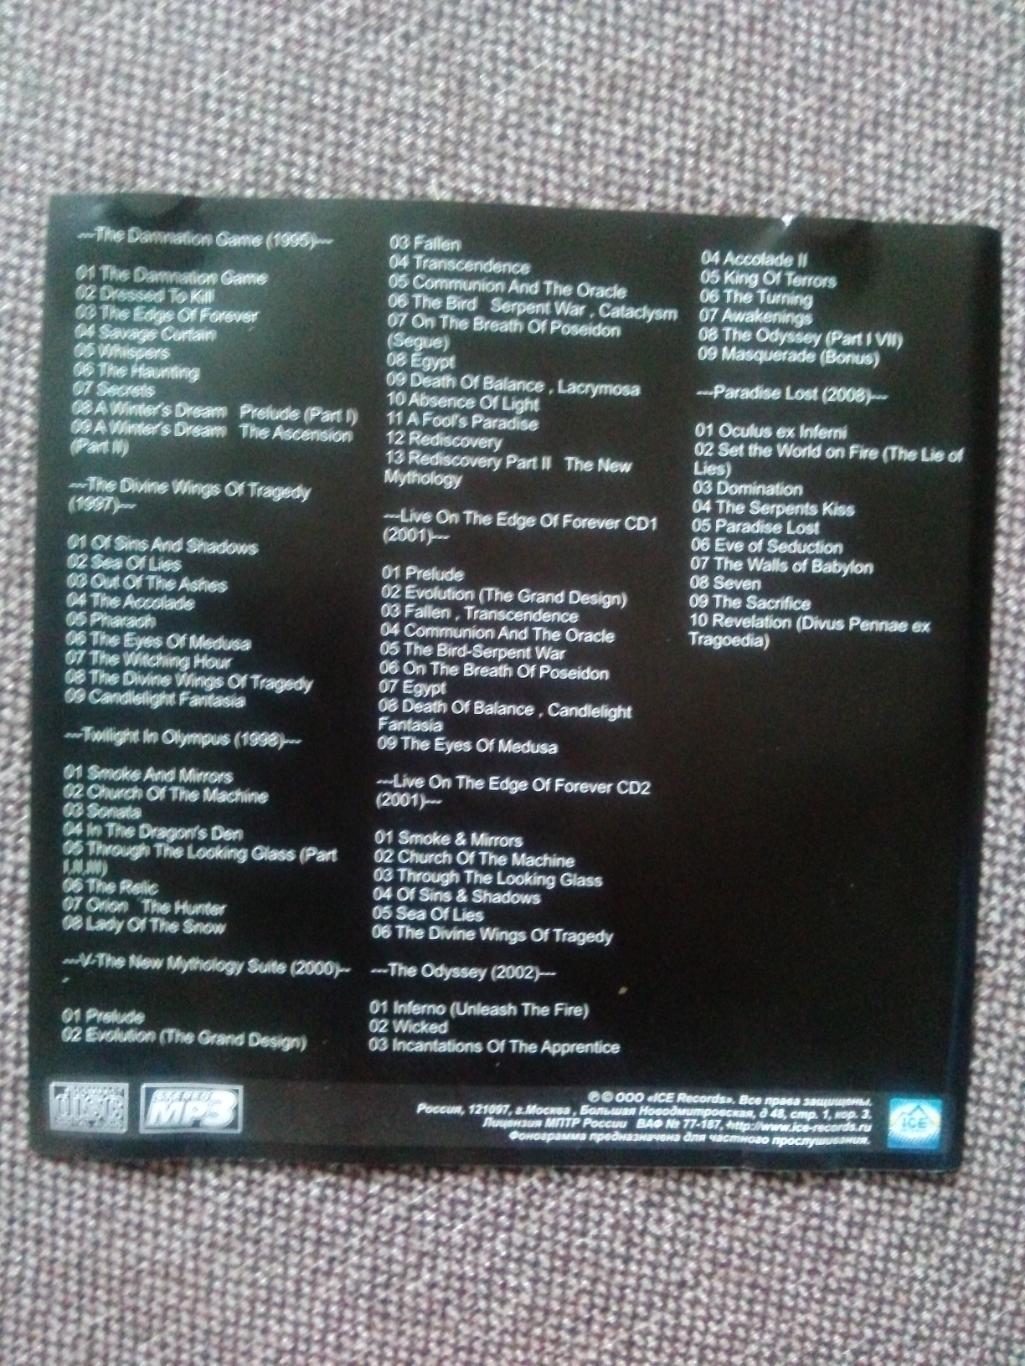 MP - 3 CD диск : группаSymphony X1995 - 2008 гг. 8 альбомов Рок - музыка 1